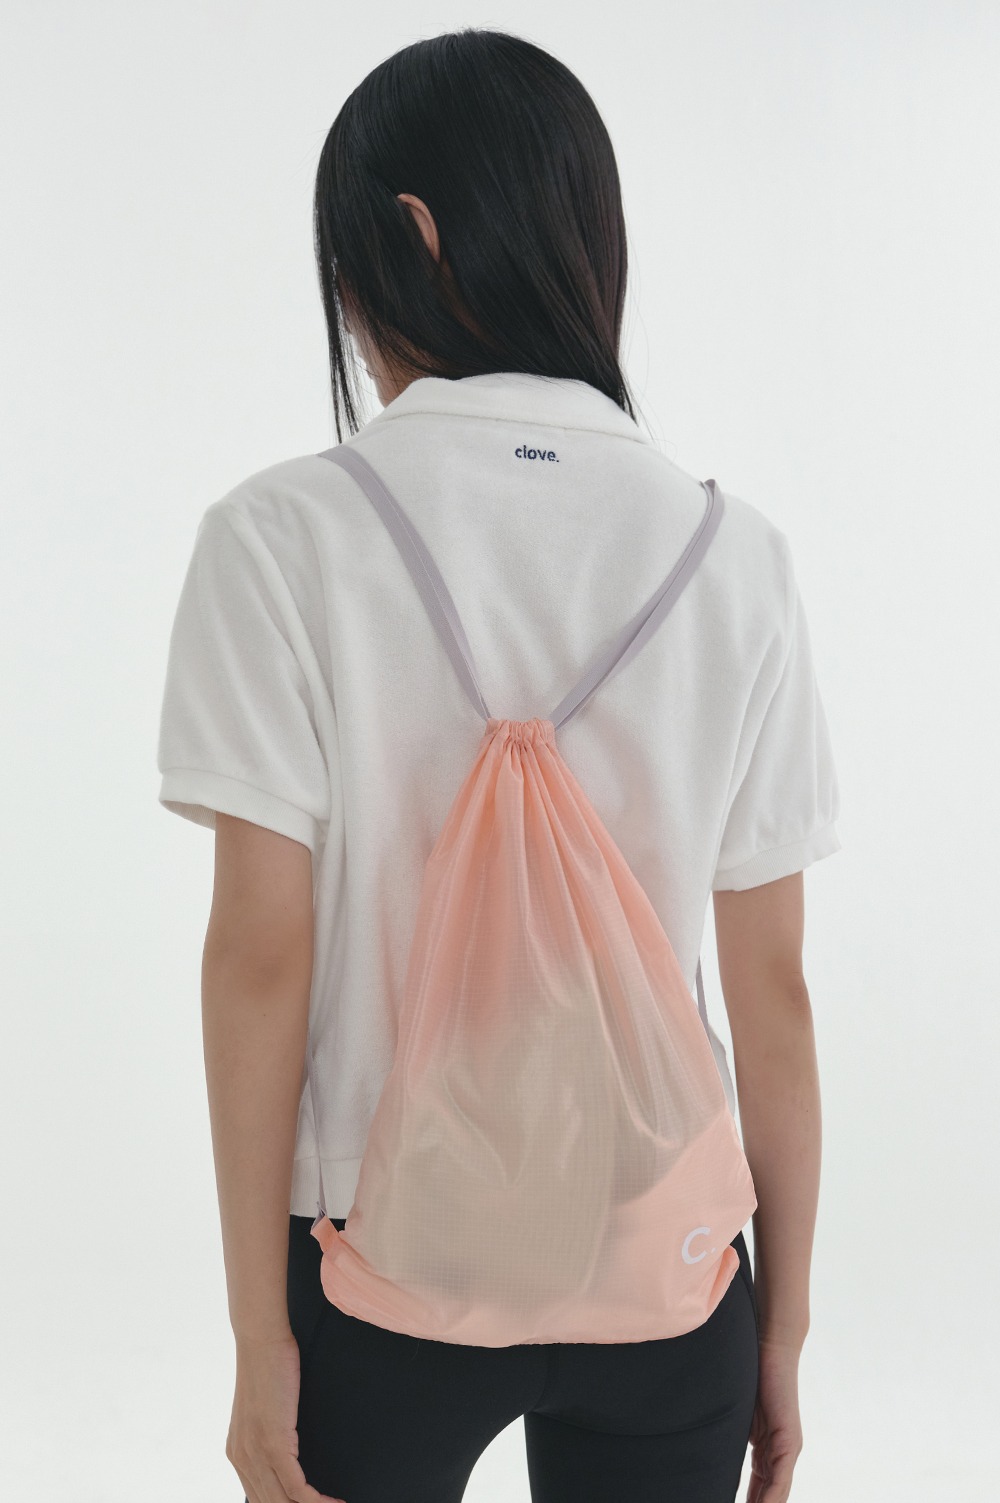 clove - [24SS Clove] Packable Gym Sack (Pink)